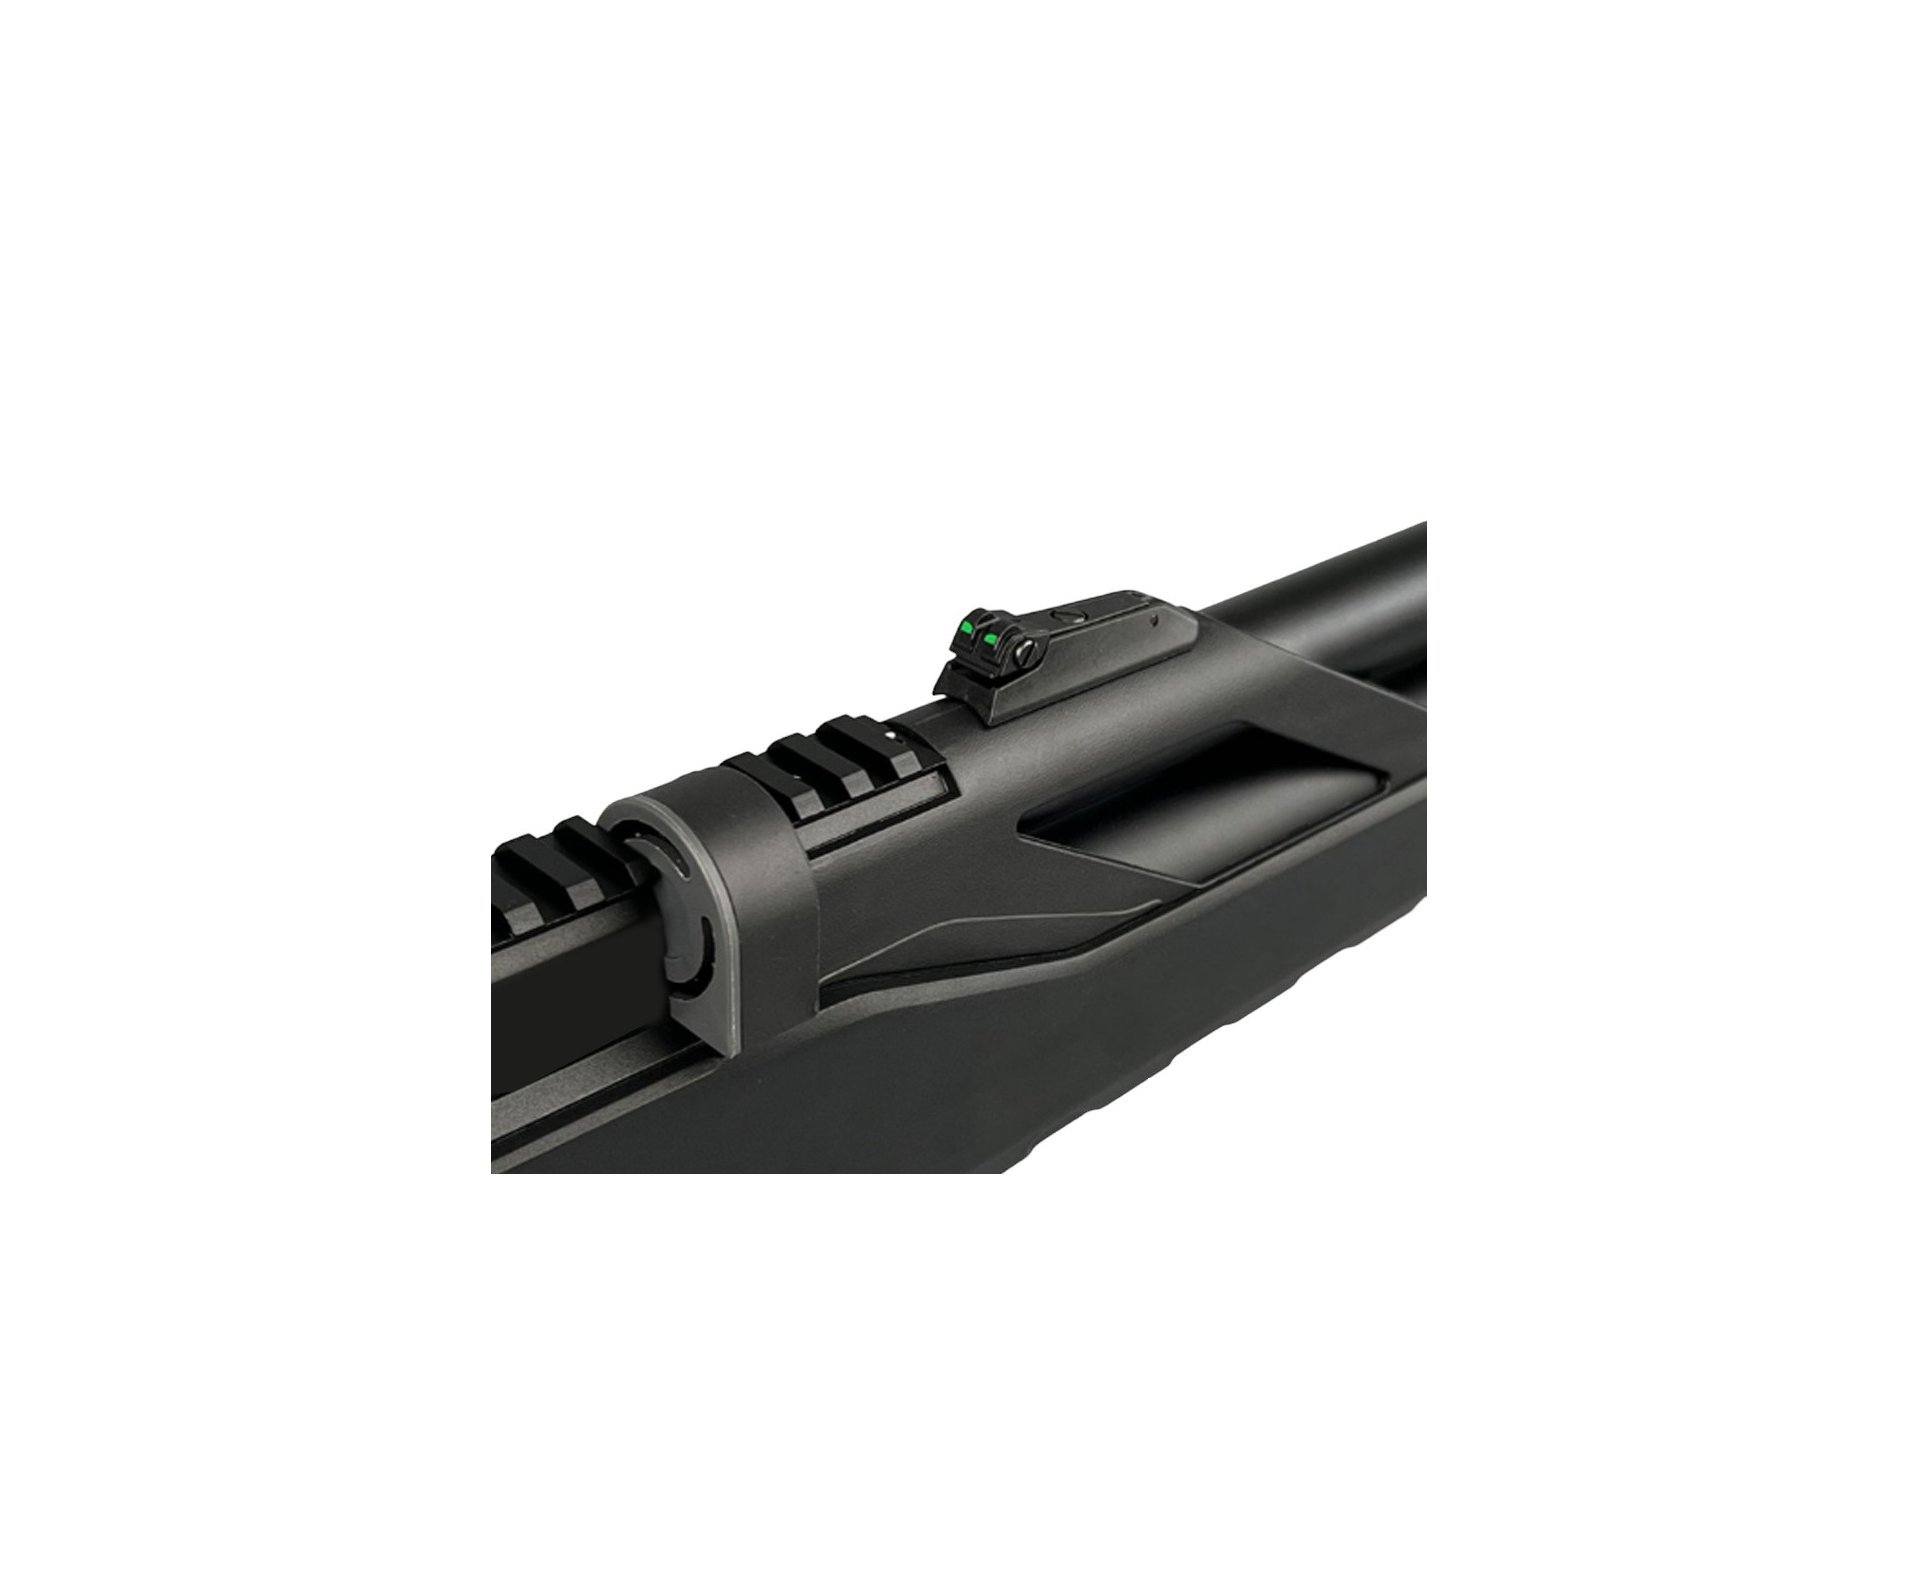 Carabina de Pressão PCP Artemis T-REX 5.5mm com Válvula Reguladora - Fixxar + Bomba + Luneta 4-16x50 + Mount